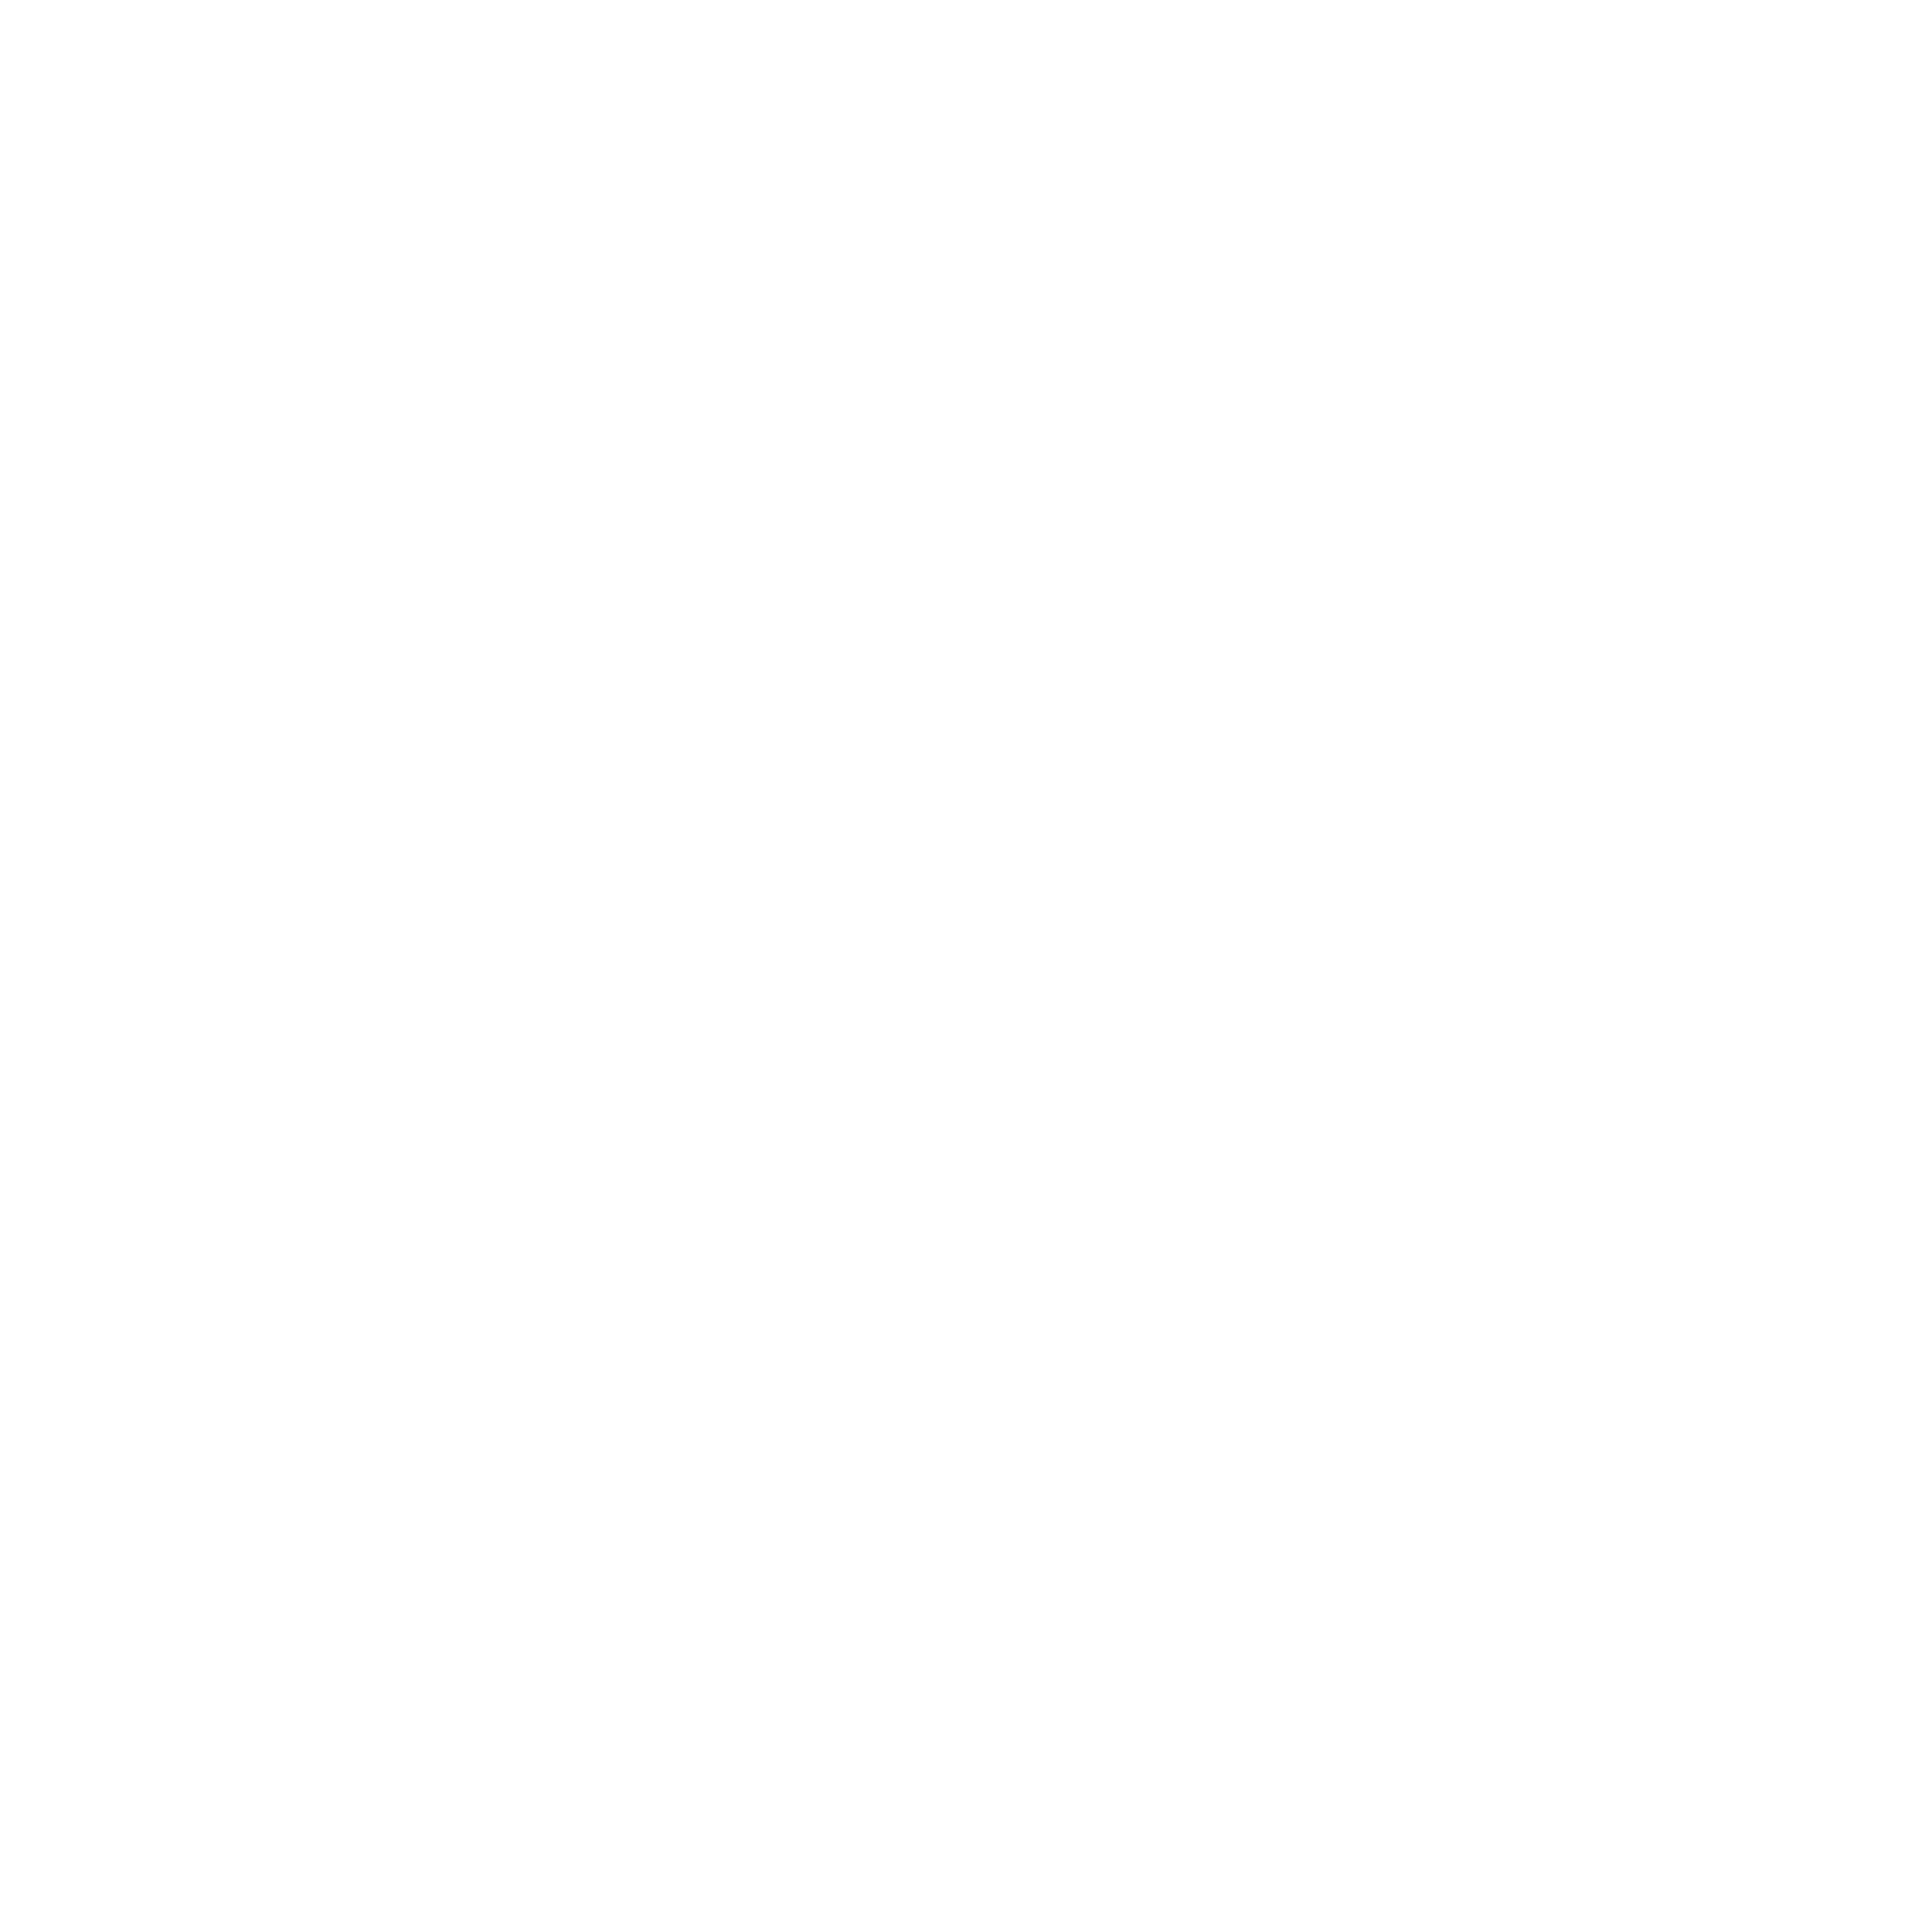 Tremendum Pictures Logo Transparent Picture